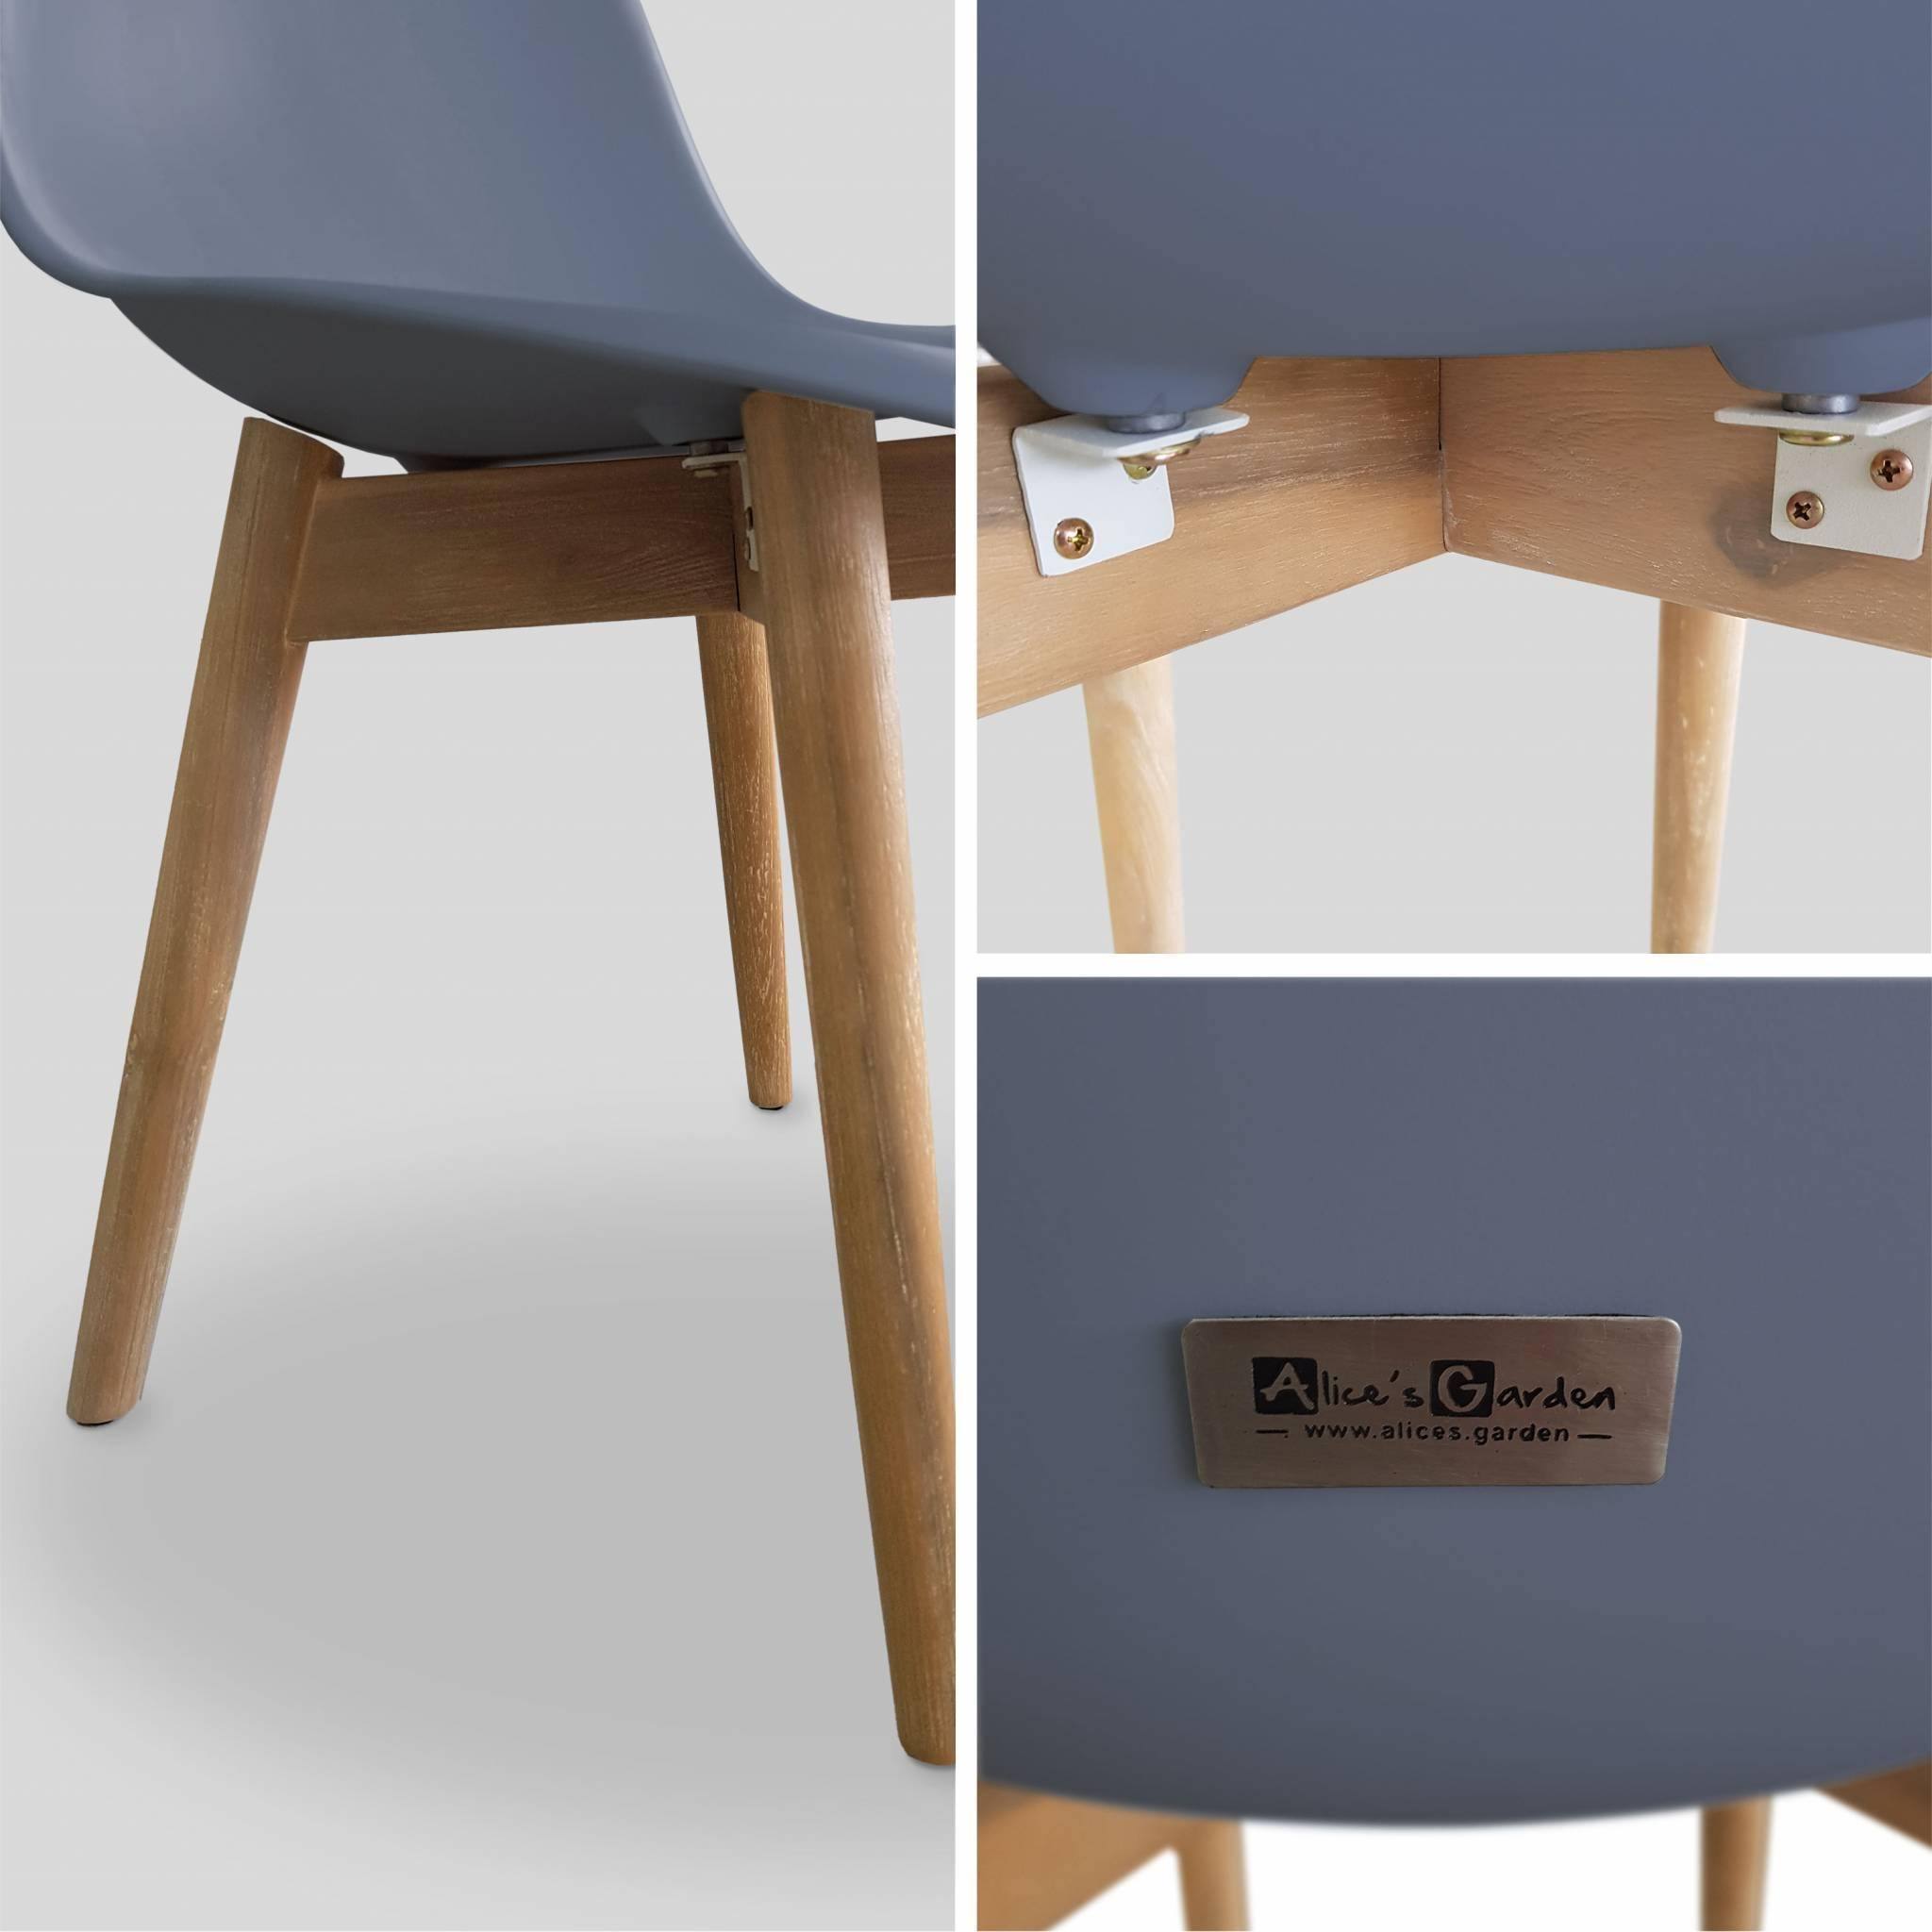 4er Set skandinavische Stühle Penida, aus Akazienholz und anthrazitfarbenem Kunstharz gespritzt, innen/außen Photo4